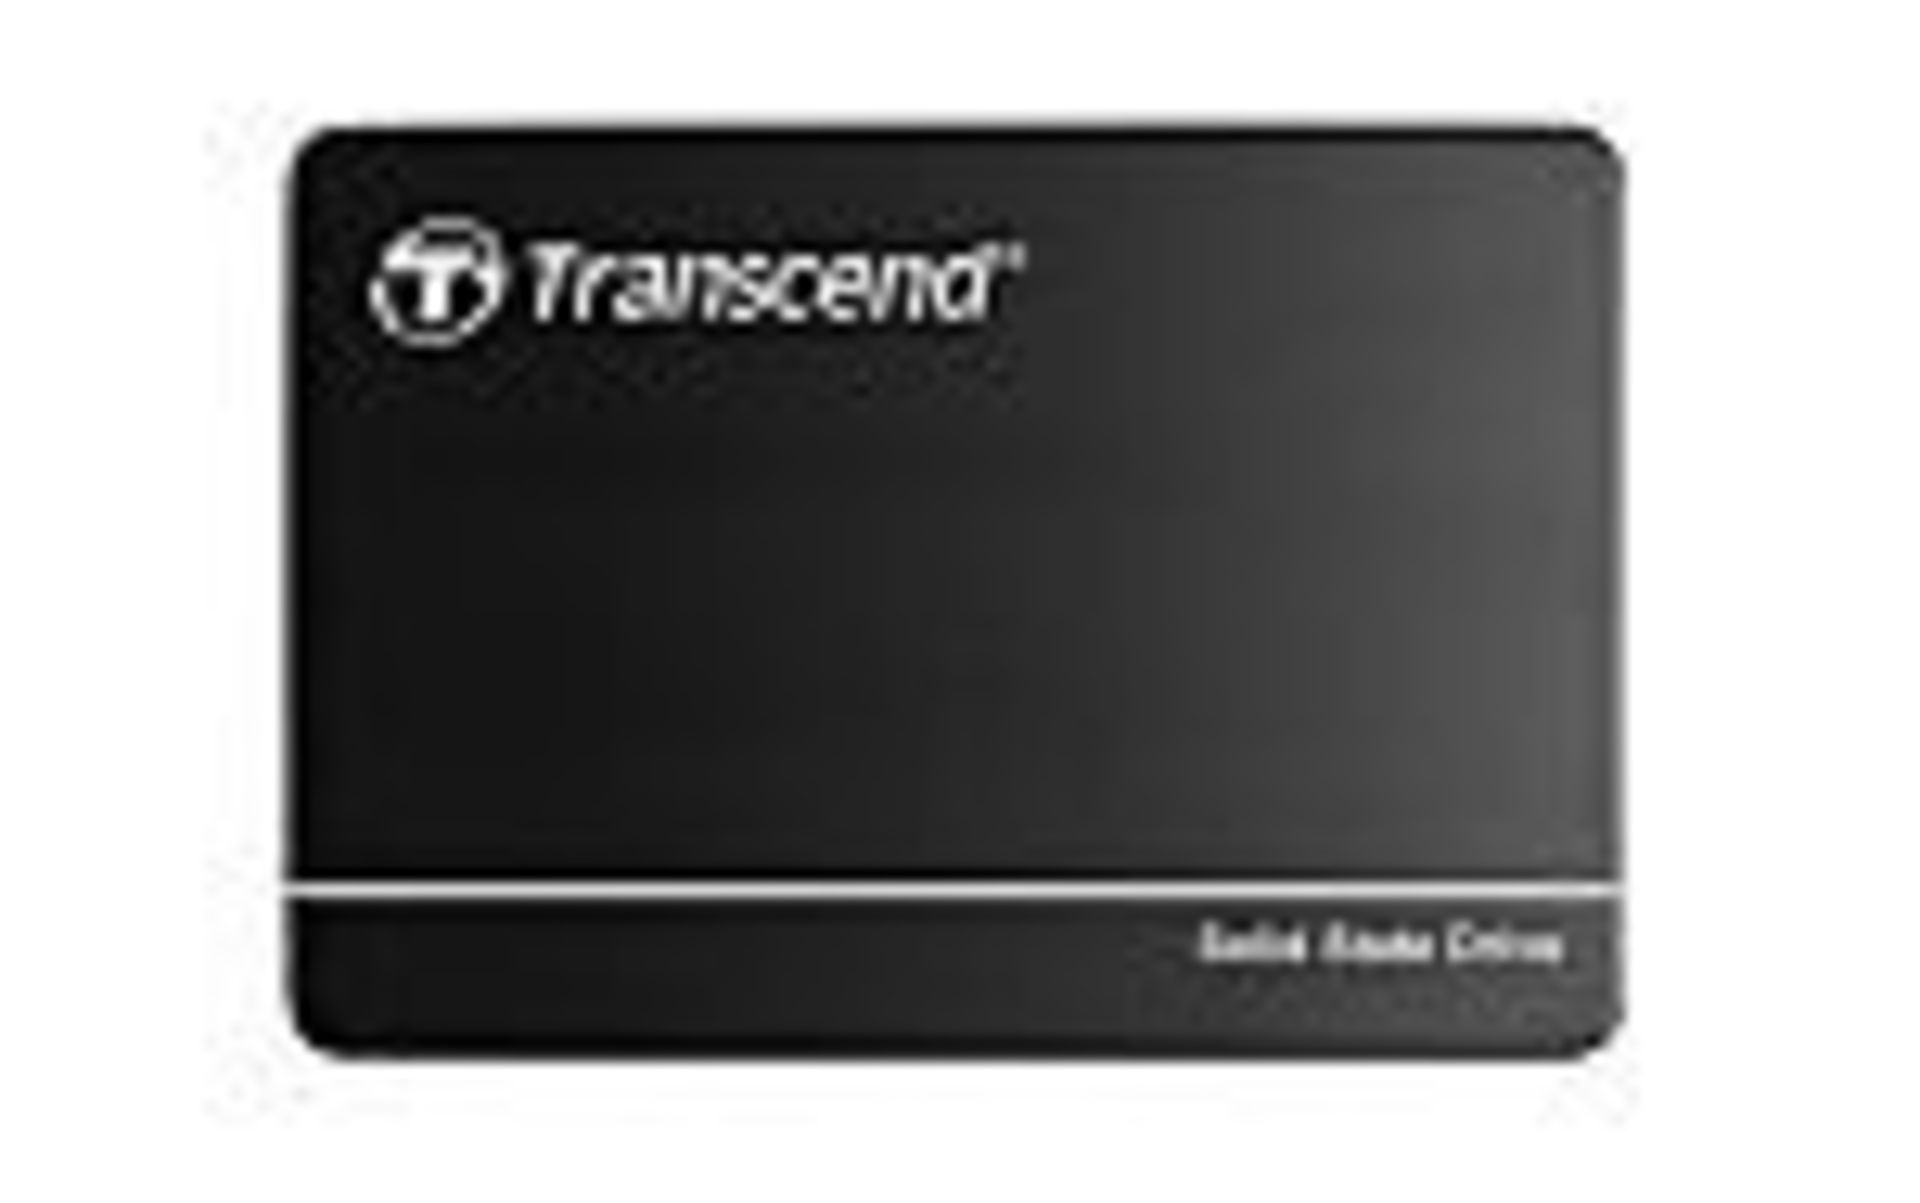 Transcend SSD420 2.5 in 1 TB SSD Hard Drive